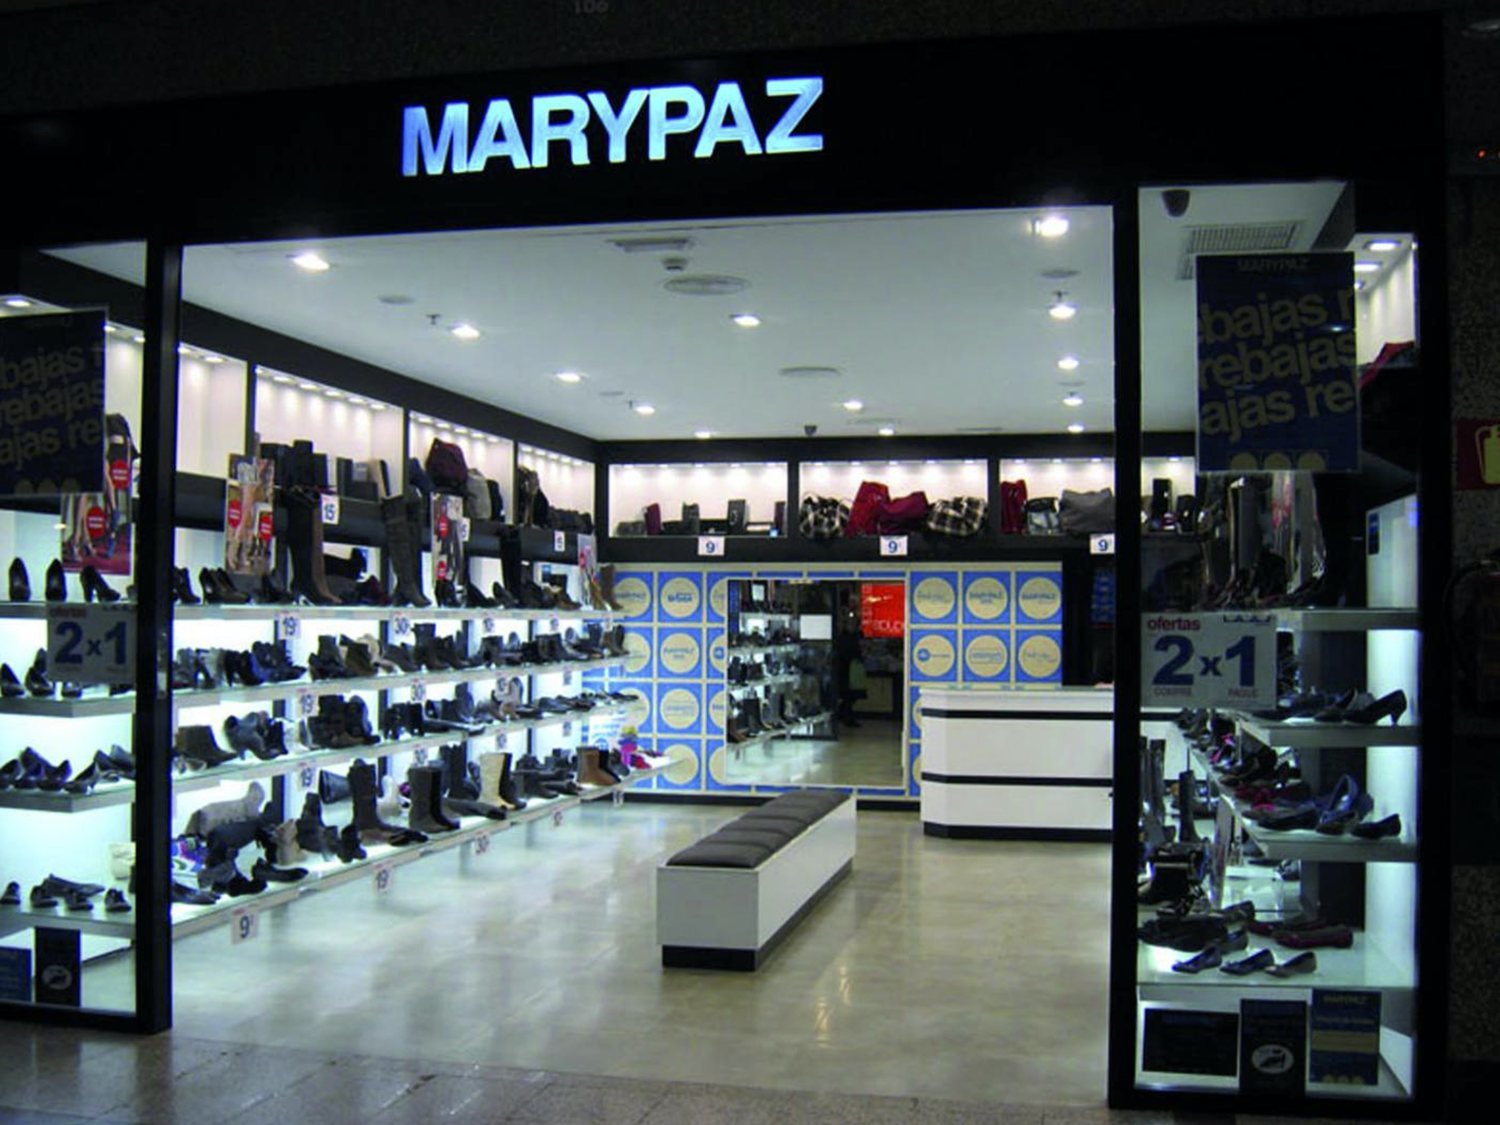 La cadena de zapaterías Marypaz entra en crisis: ERE y cierre de tiendas tras la pandemia